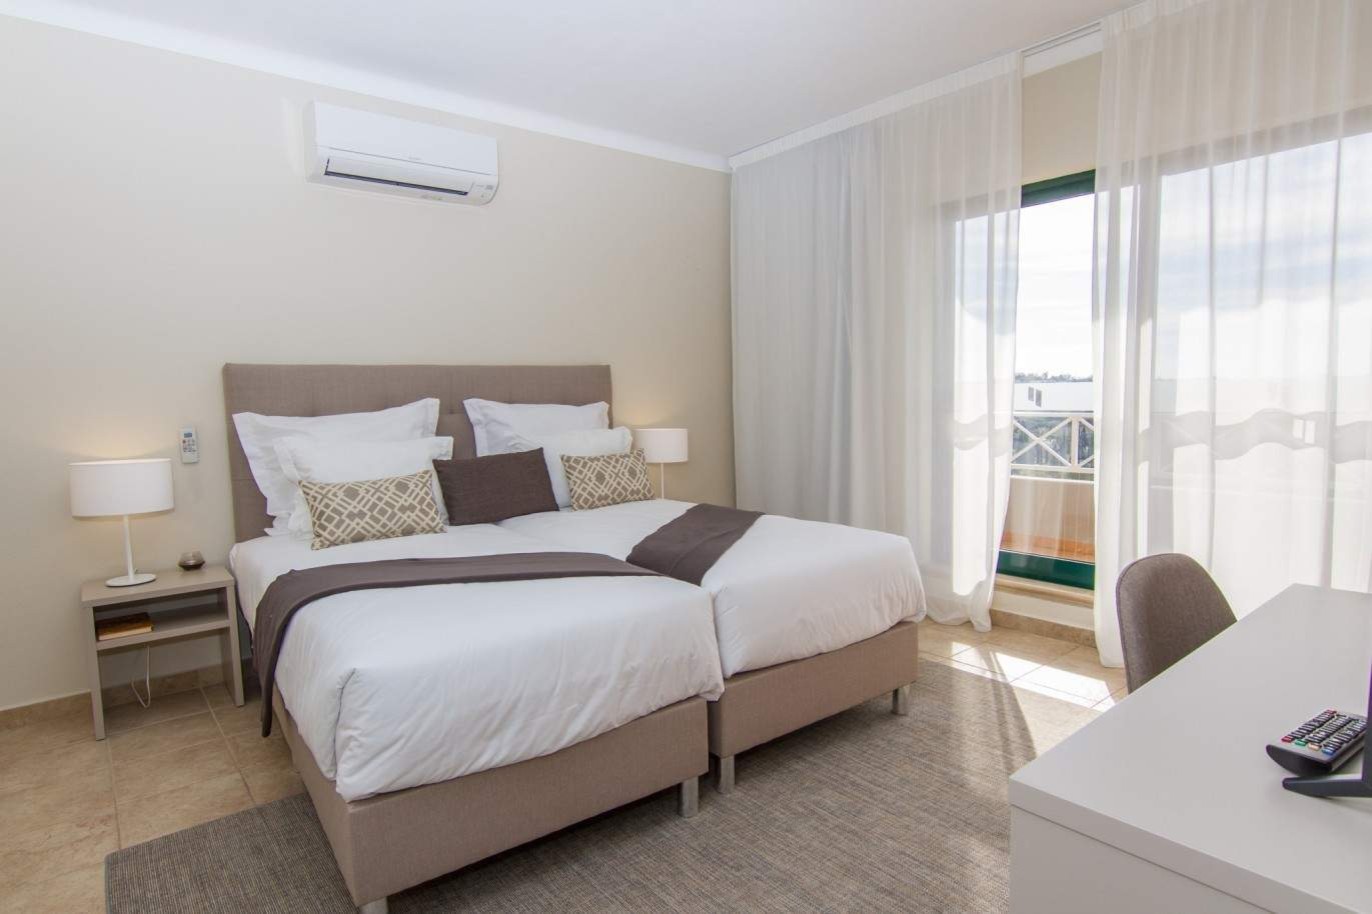 Venta de apartamento nuevo en el Carvoeiro, Algarve, Portugal_214776